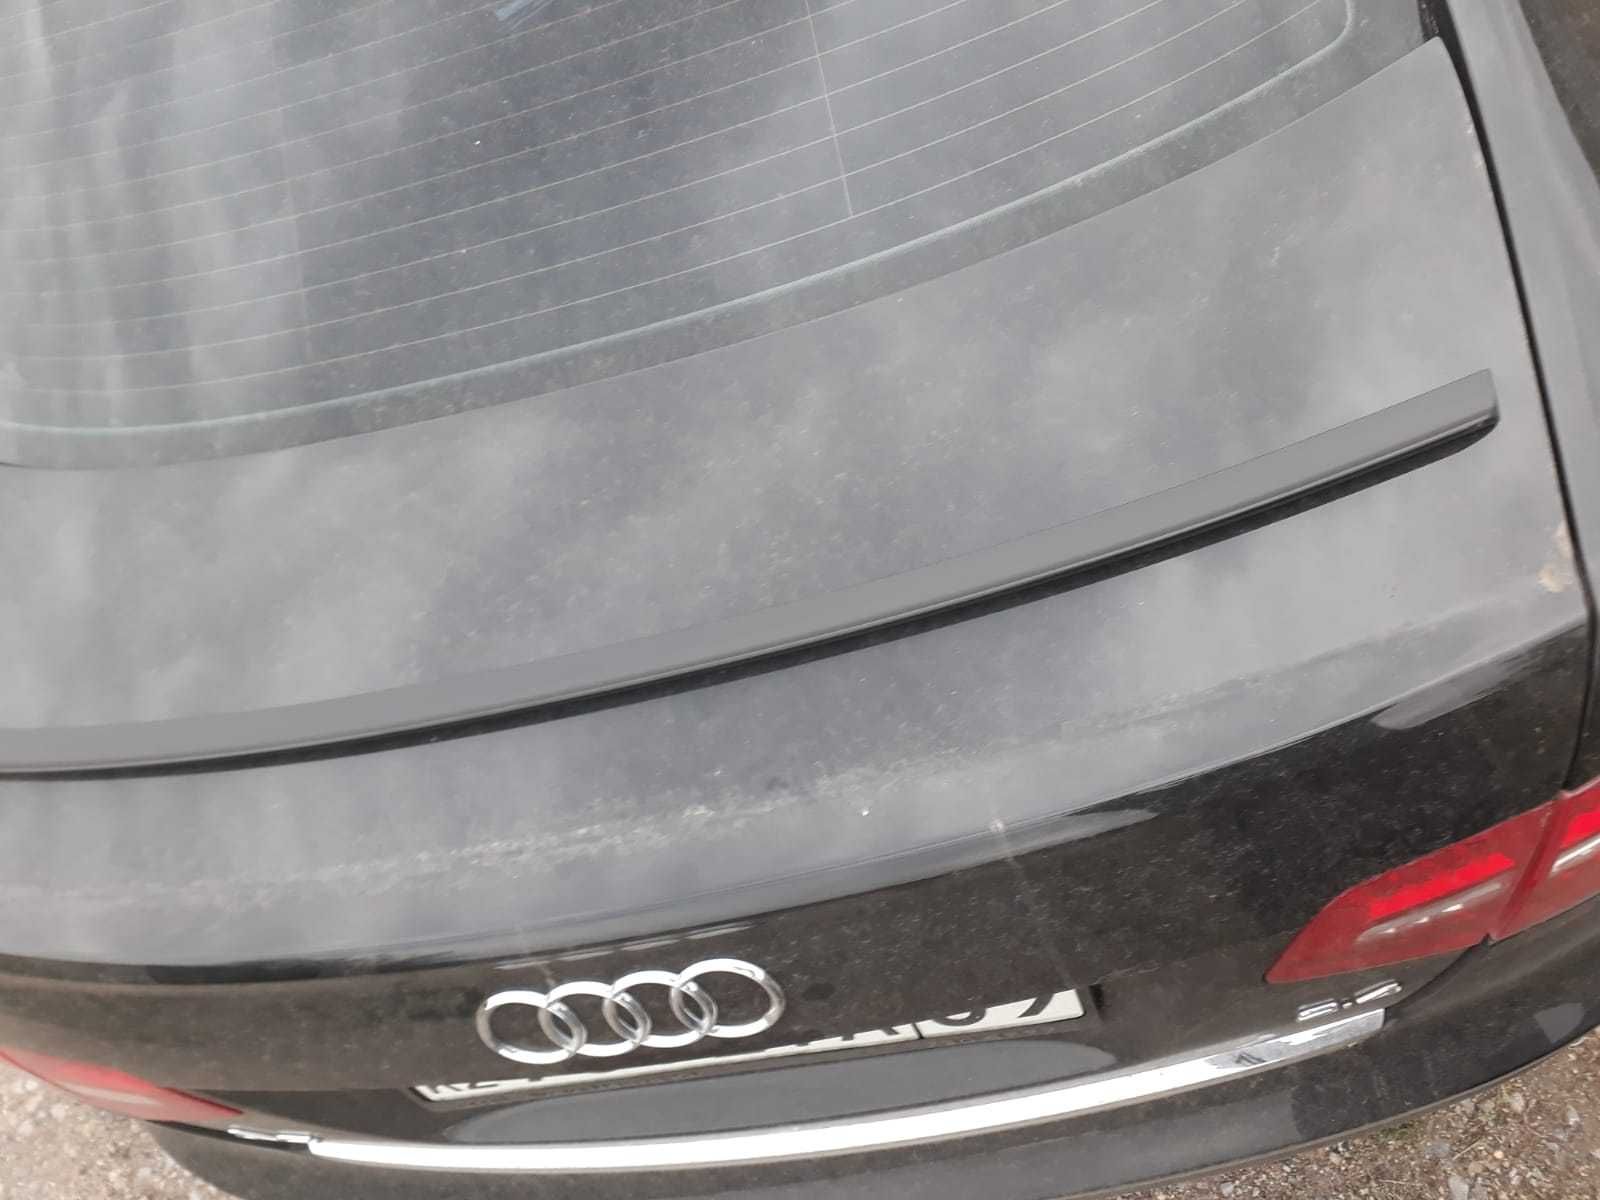 Спойлер на заднюю крышку багажника Audi A6 C6, седан, дорейсталл